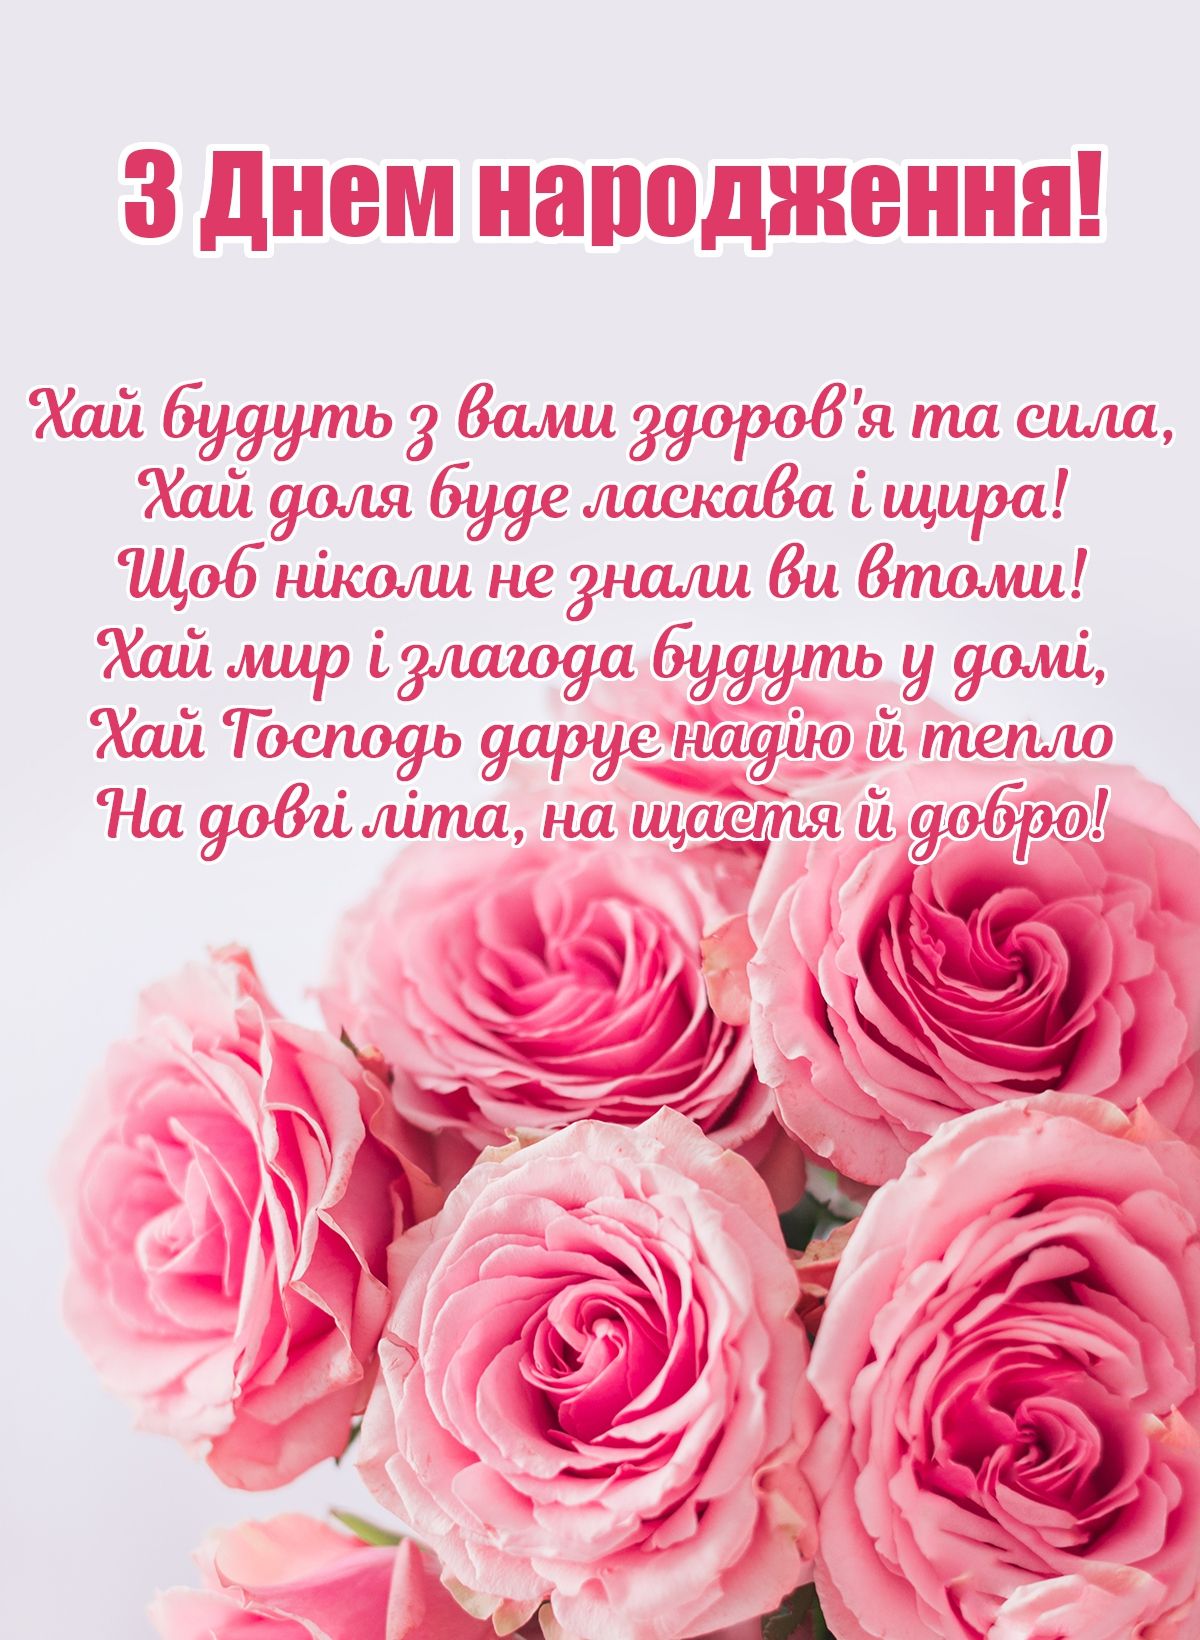 Привітання батькам з днем народження дитини 2 роки хлопчику, дівчинці українською мовою
